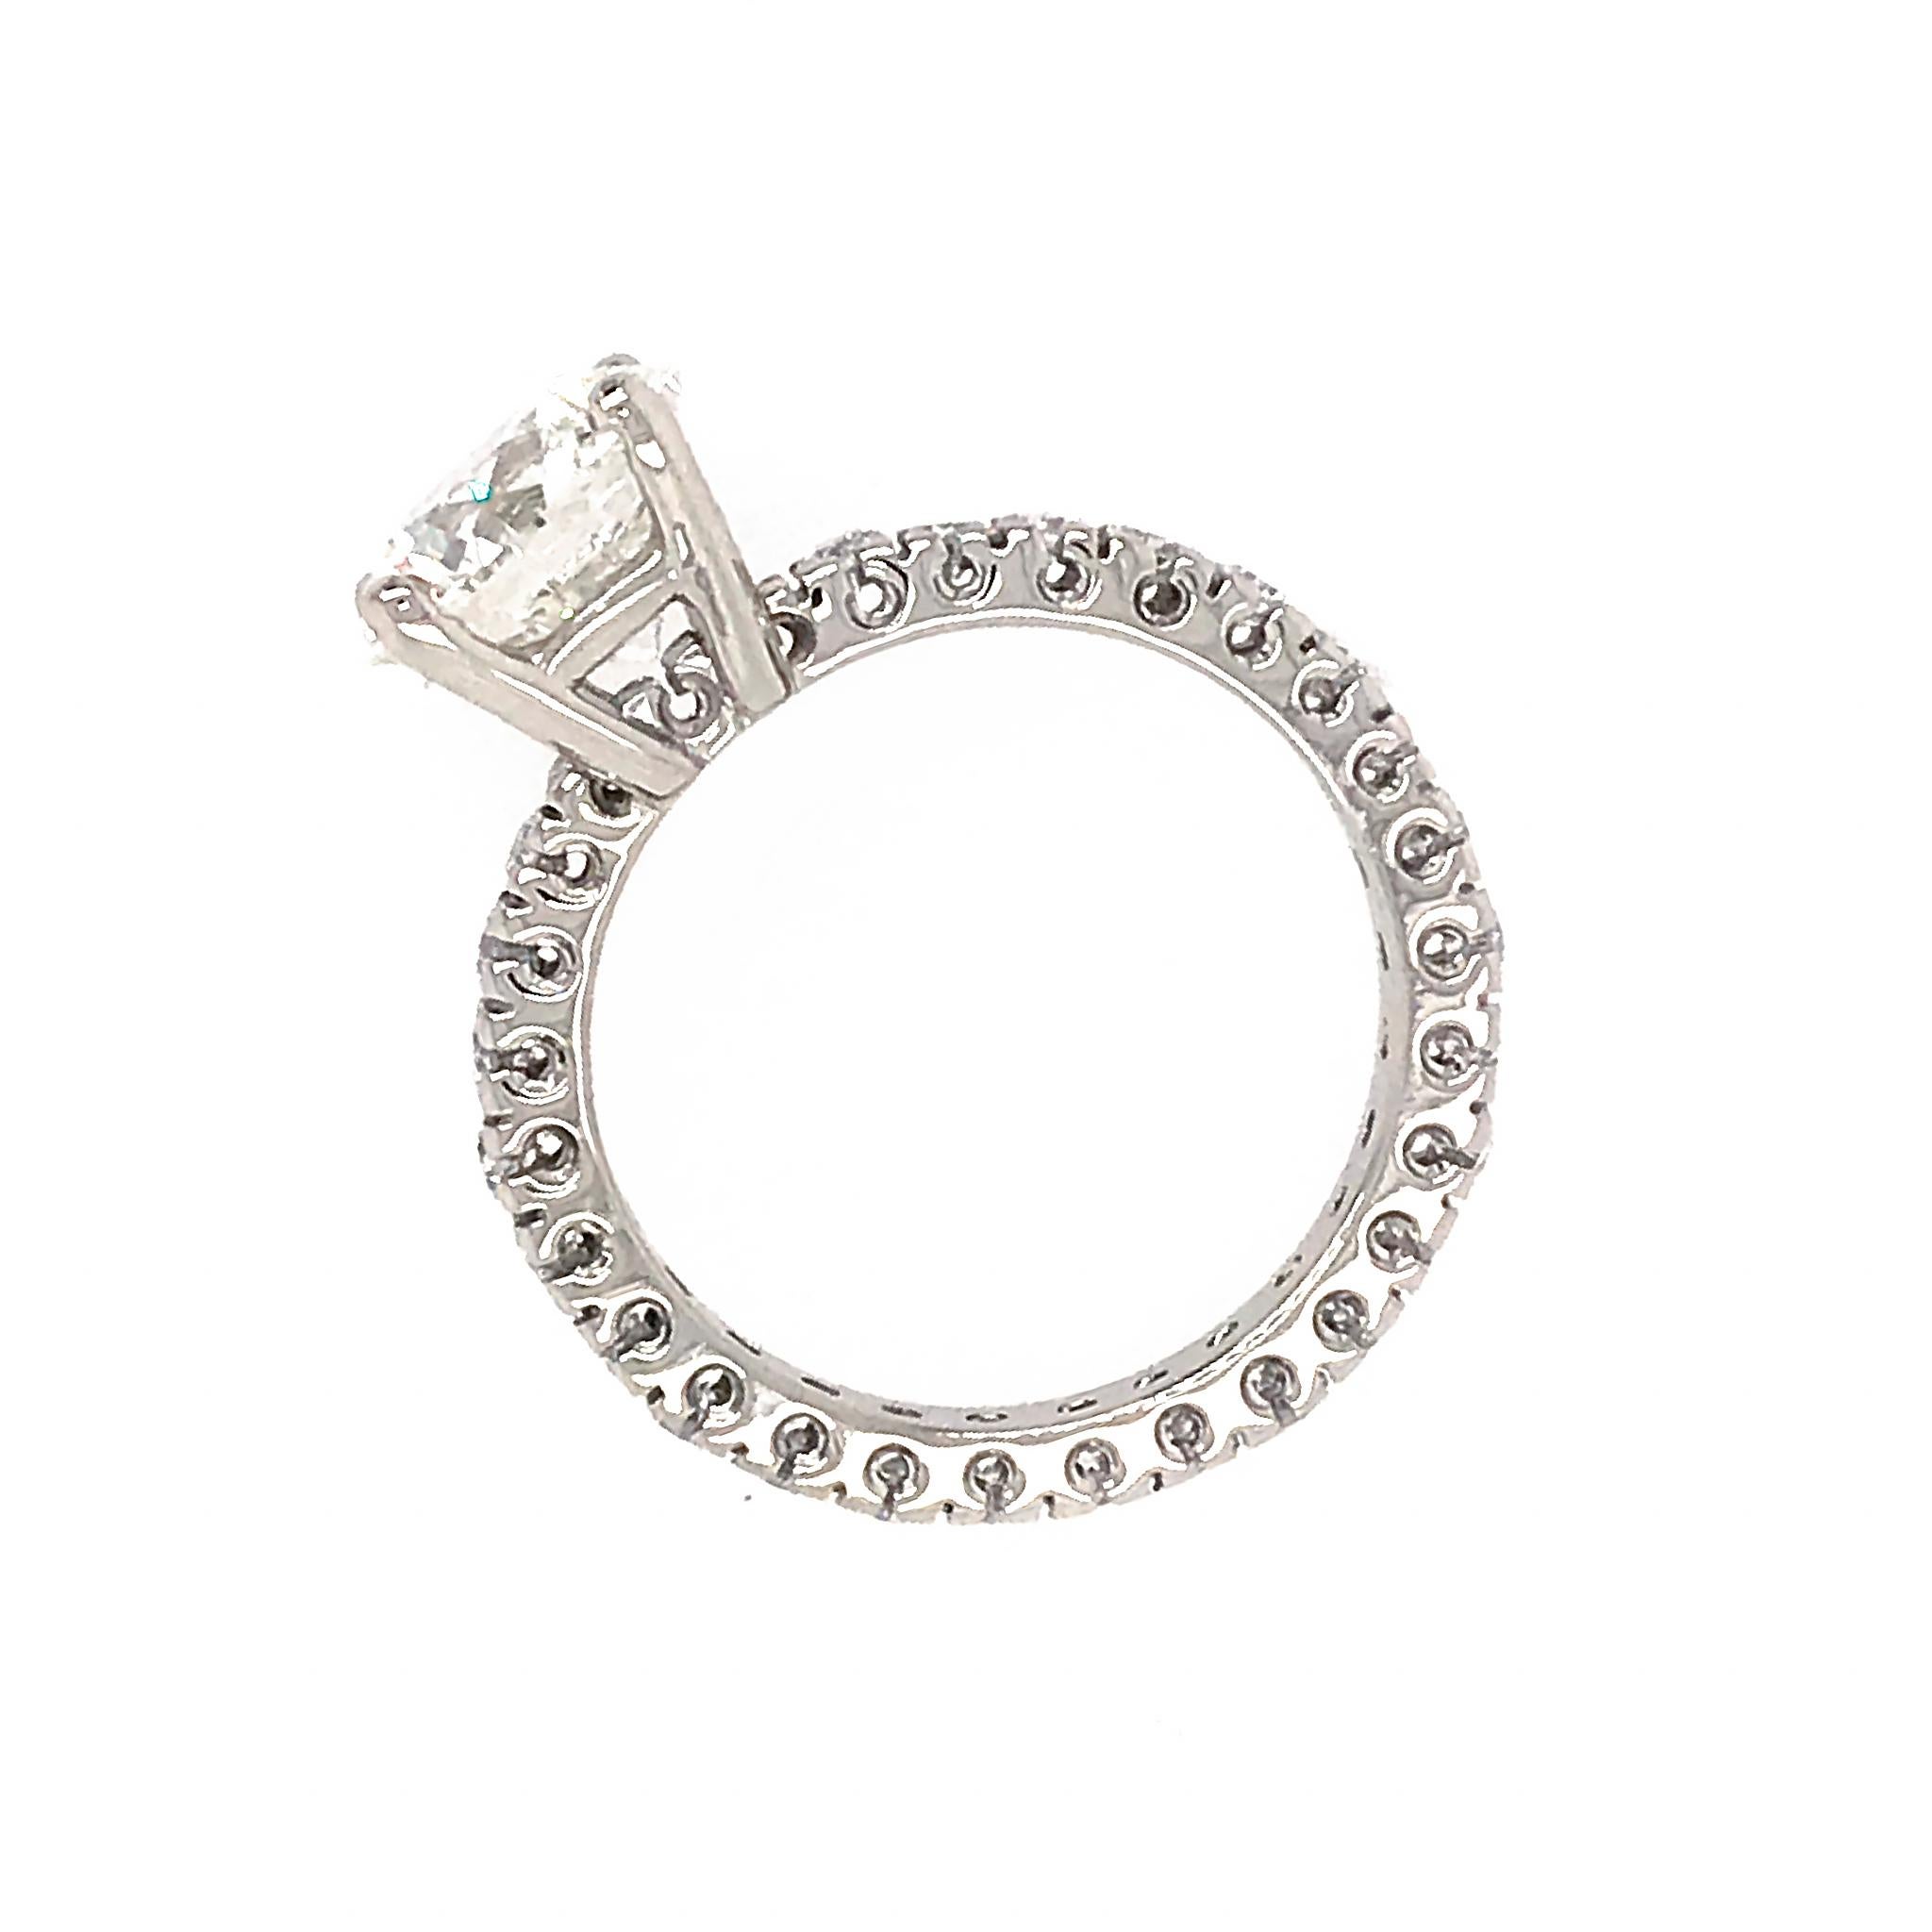 Round Cut GIA Certified 3.01 Carat Diamond Engagement Ring